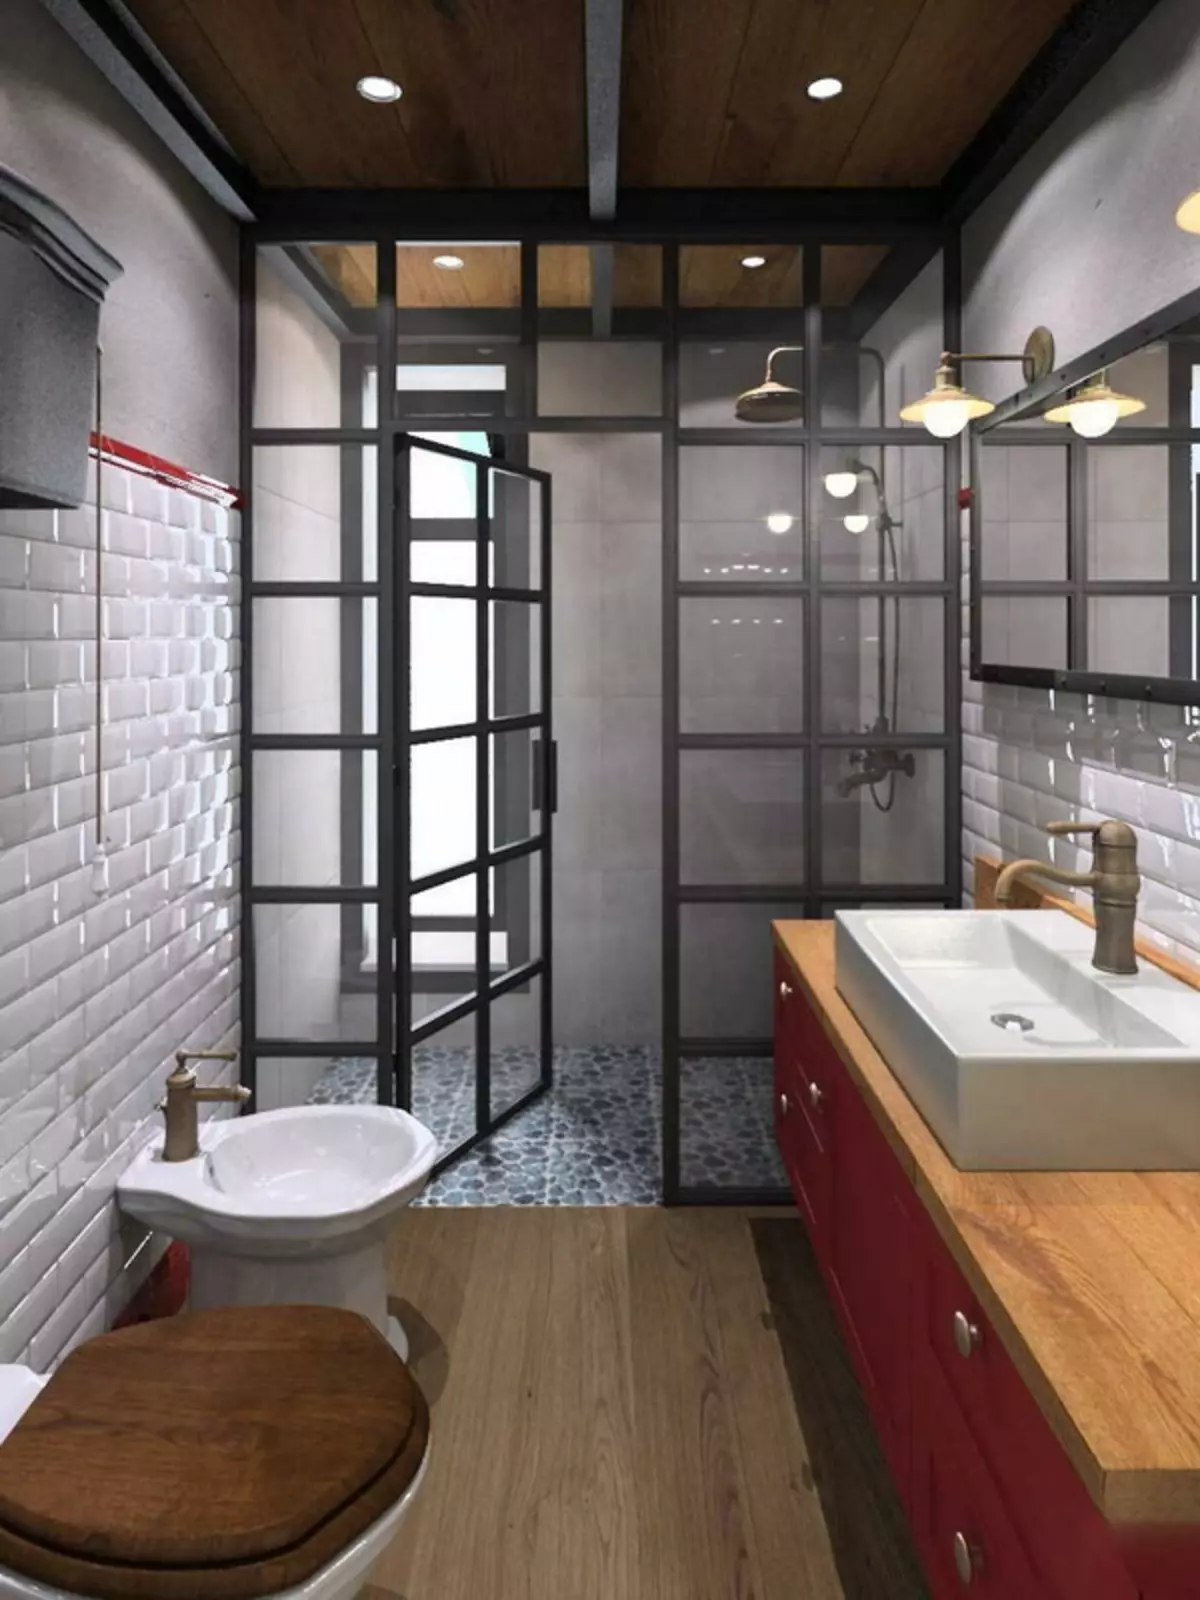 Loft toilet (40 foto's): Toilet interieurontwerp opsies Baie klein area, telefoon seleksie 10498_28